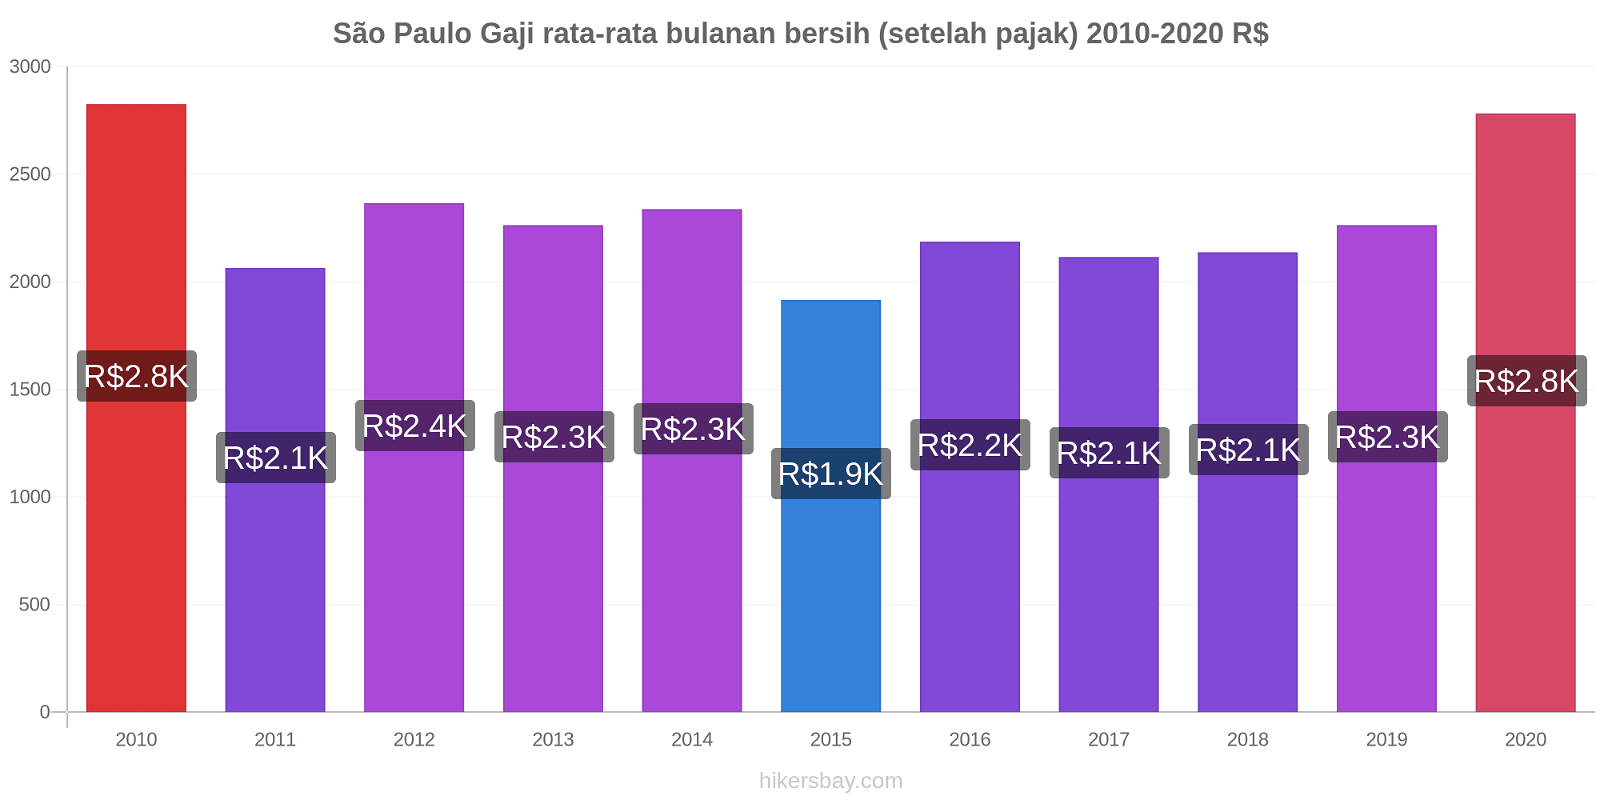 São Paulo perubahan harga Gaji rata-rata bulanan bersih (setelah pajak) hikersbay.com